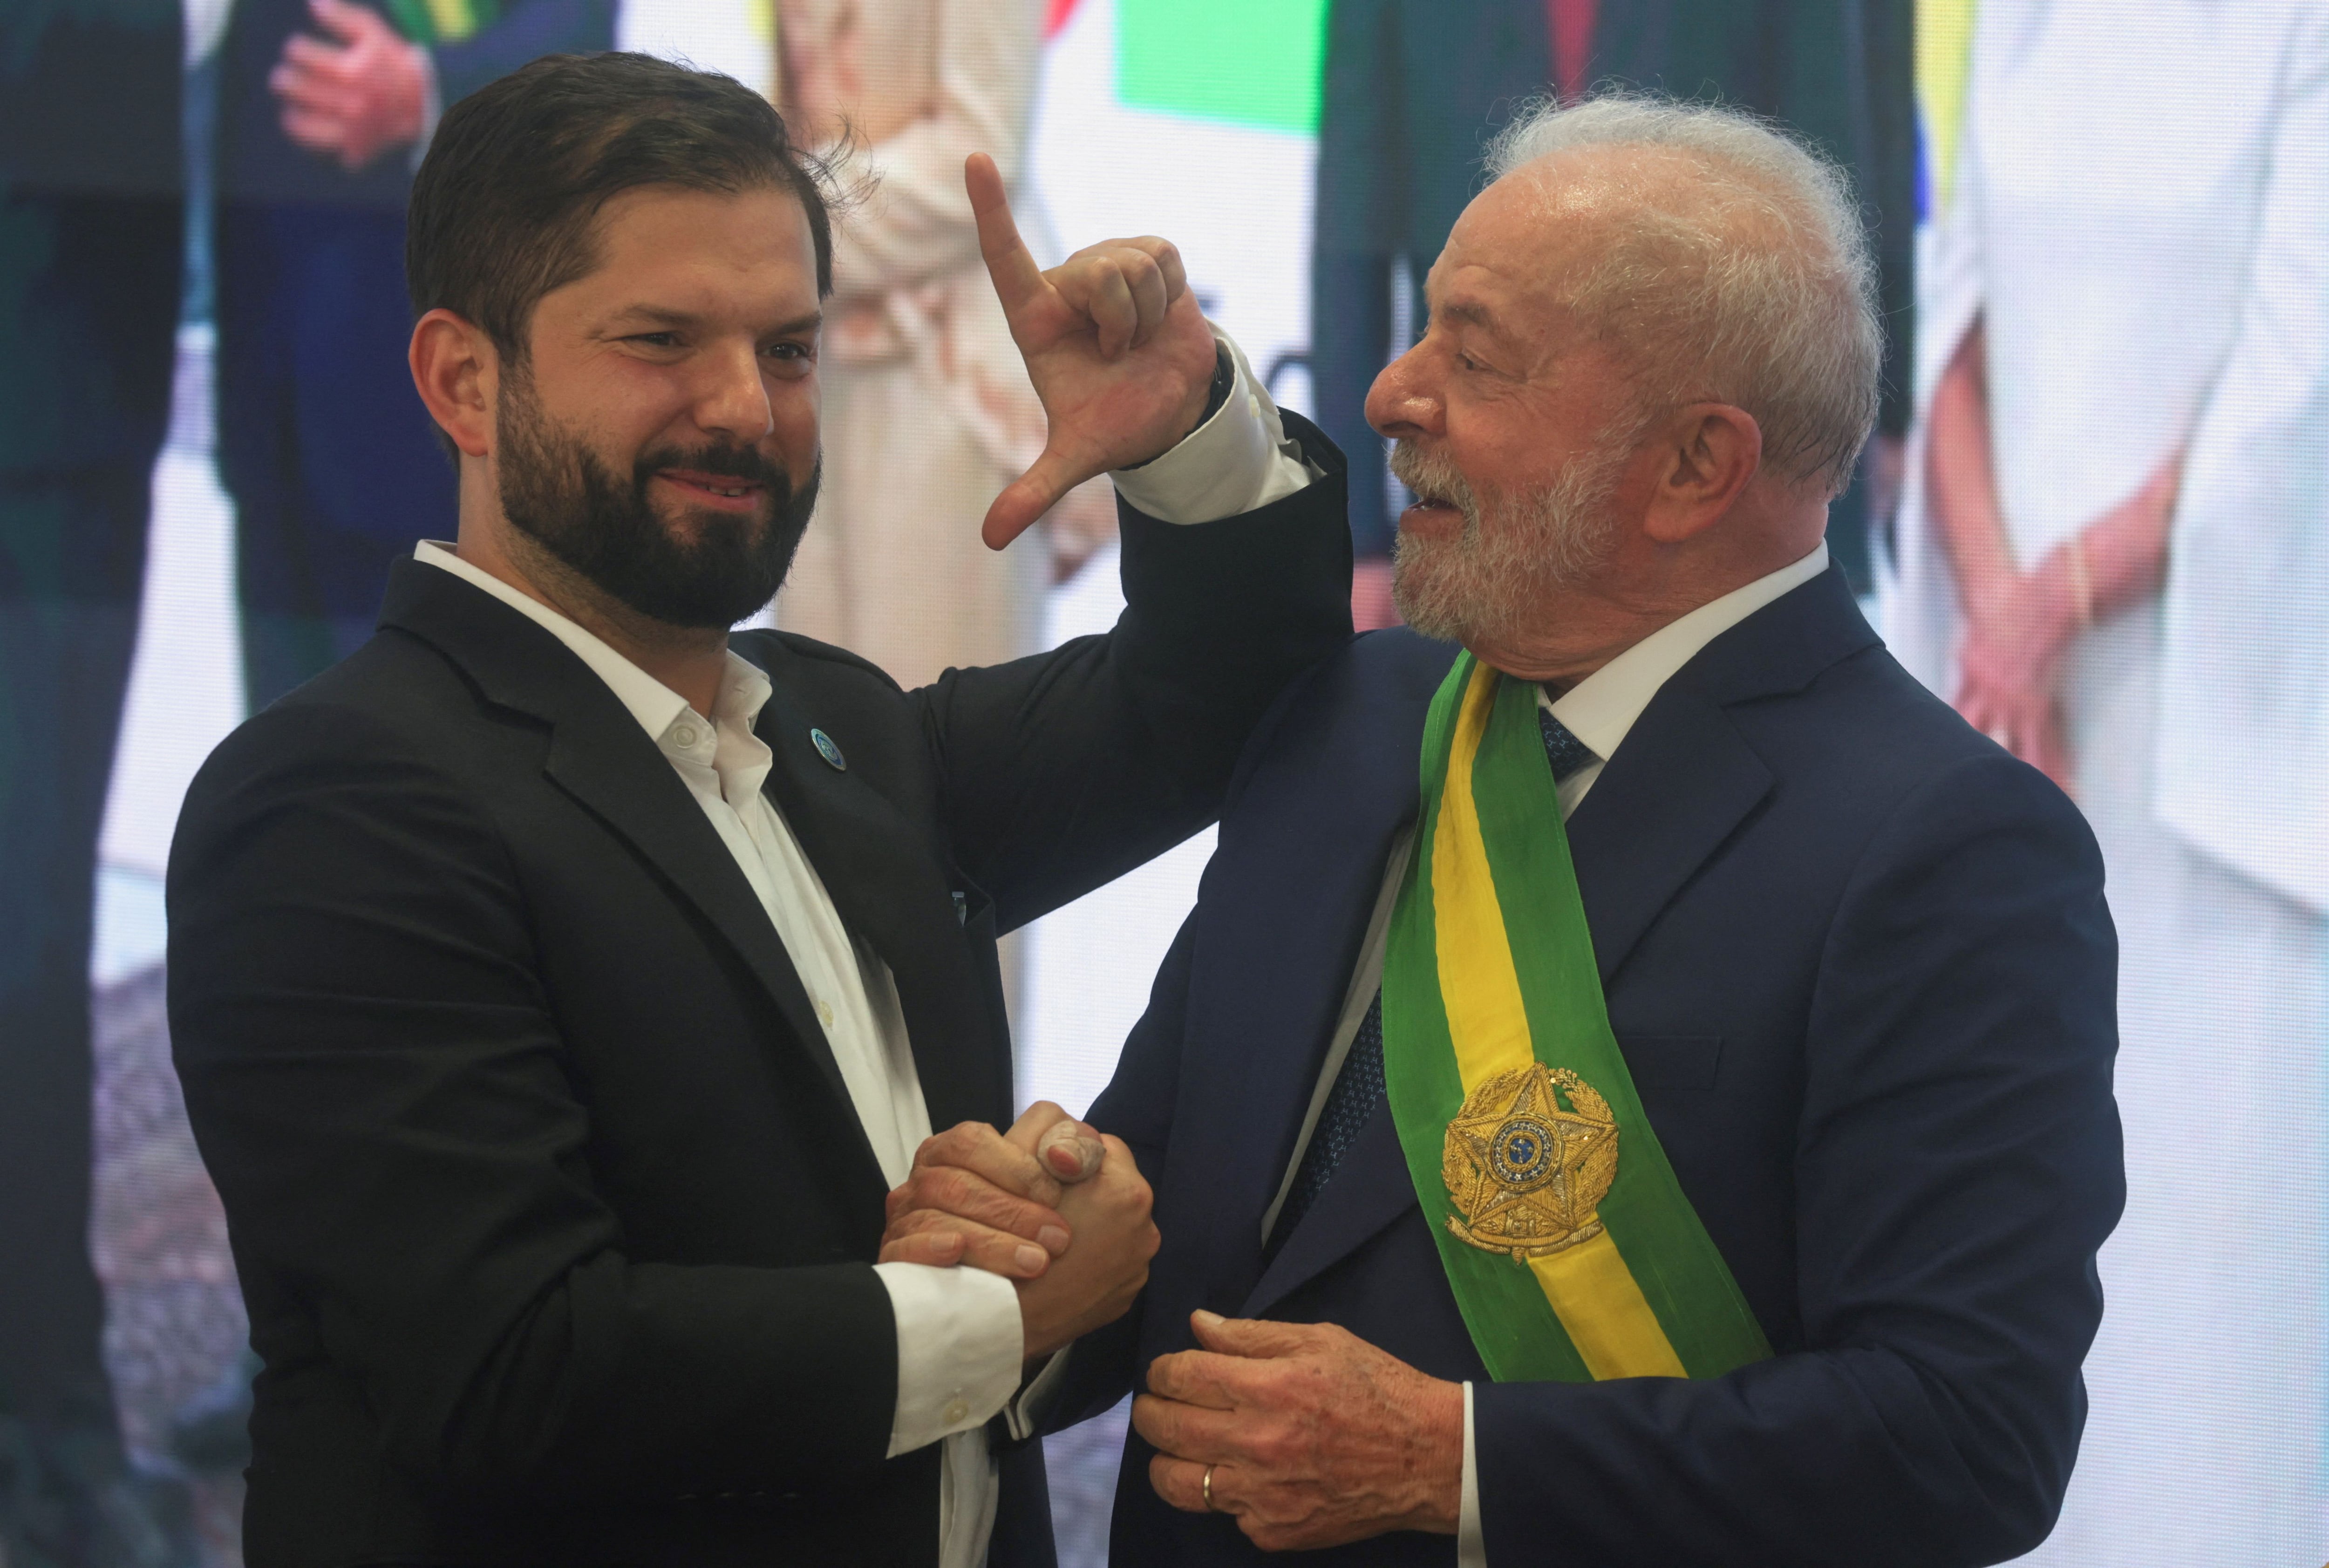 El presidente chileno se ha distanciado de Lula al criticar la invasión rusa en Ucrania y dejar en claro que lo que sucede en la Venezuela de Maduro no es una "construcción narrativa", como dijo el mandatario brasileño. REUTERS/Ricardo Moraes